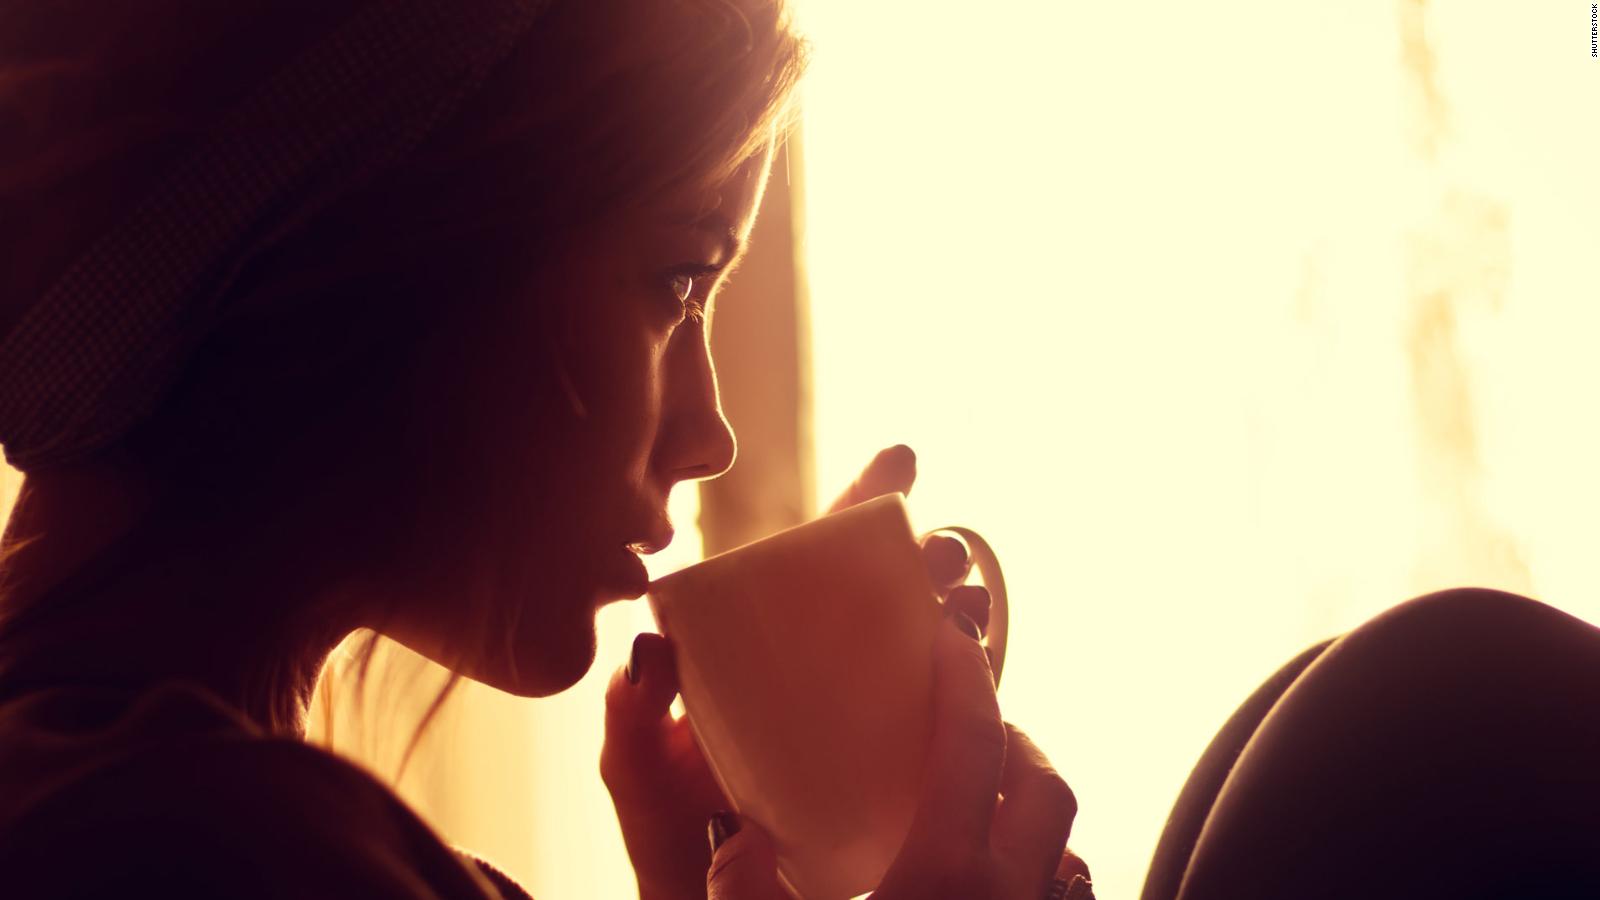 El café negro puede ser bueno para el corazón, según los estudios